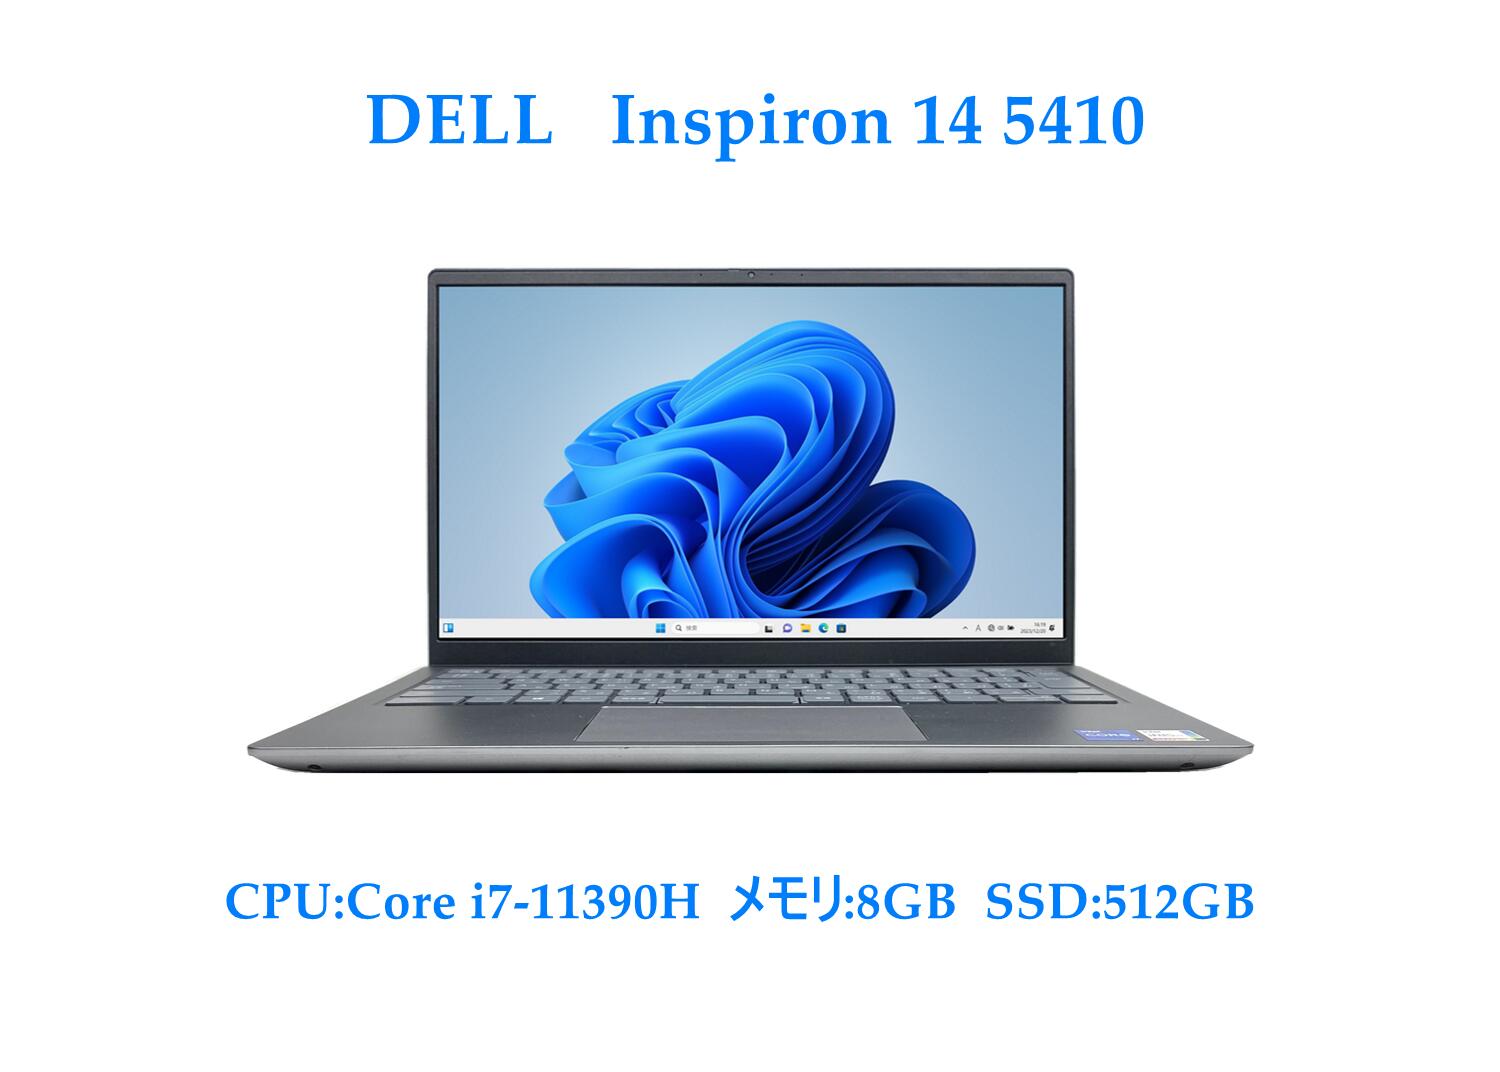 【送料無料】NT: 高速SSD Dell Inspiron 14 5410 Windows11 intel core i7-11390H 2.80GHz メモリー8GB SSD 512GB 無線LAN Office 付き HDMI 内蔵カメラ ノートパソコン【【中古】【3ケ月保証】